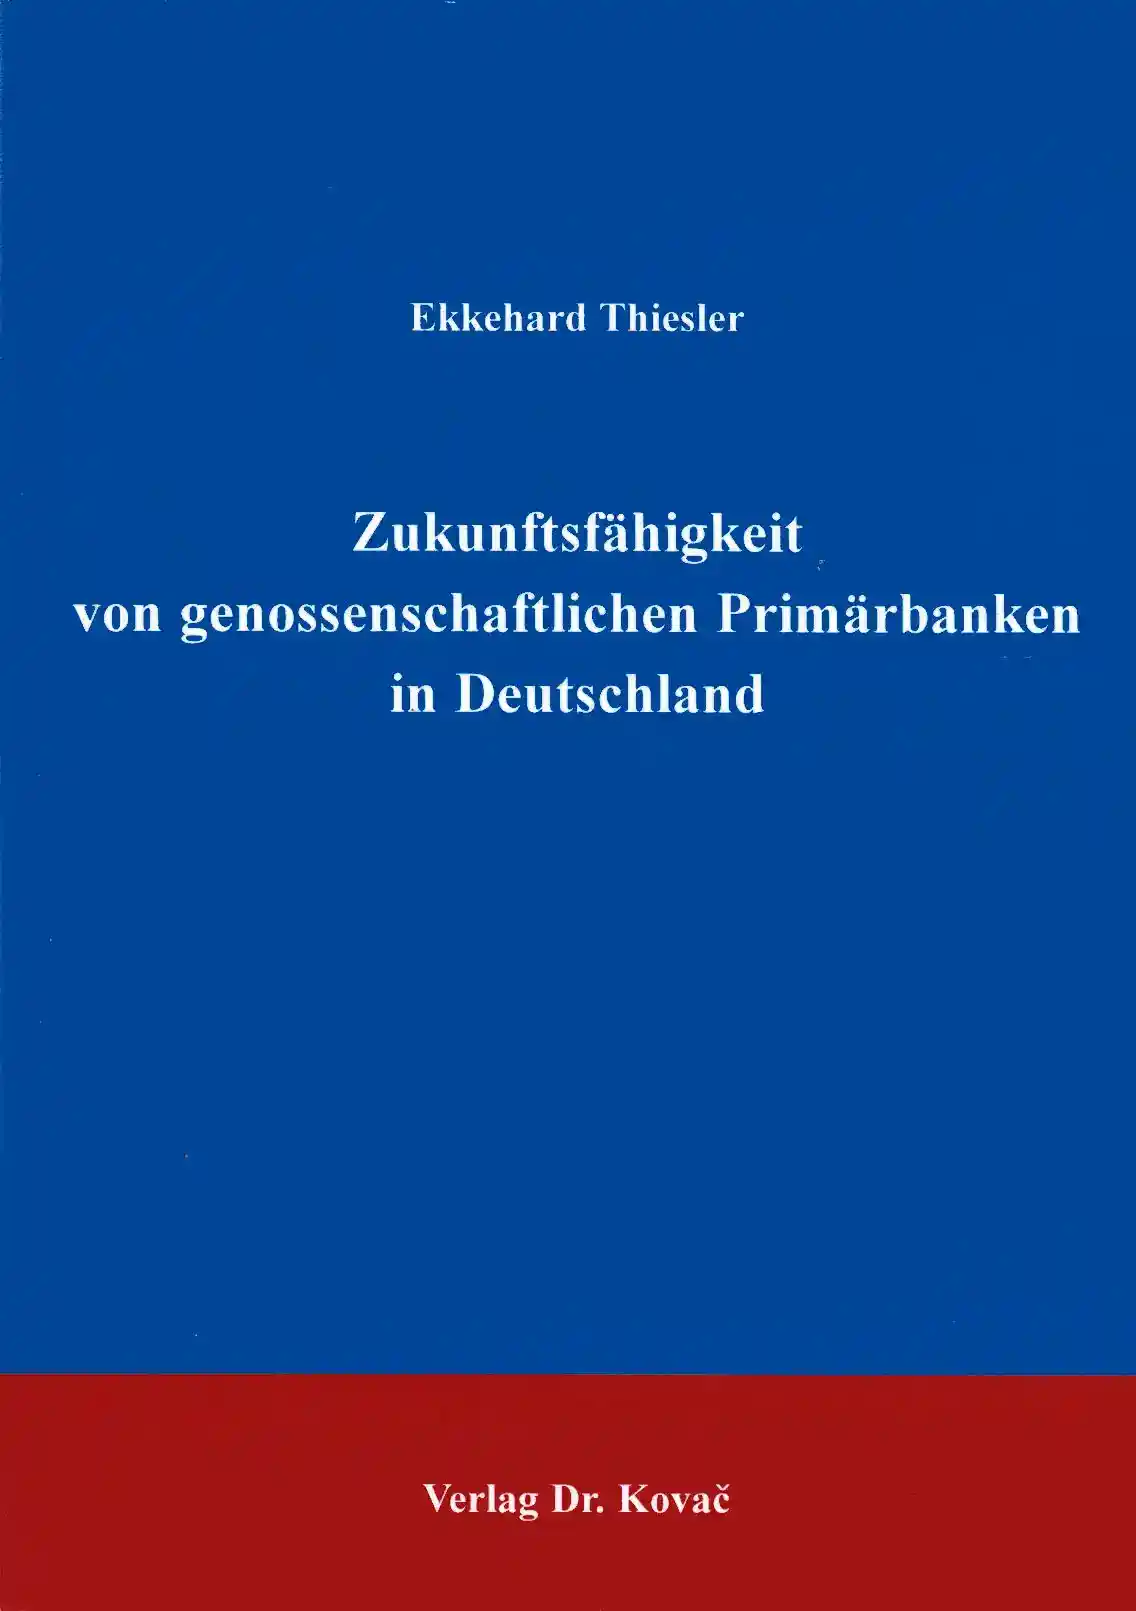 Zukunftsfähigkeit von genossenschaftlichen Primärbanken in Deutschland (Doktorarbeit)